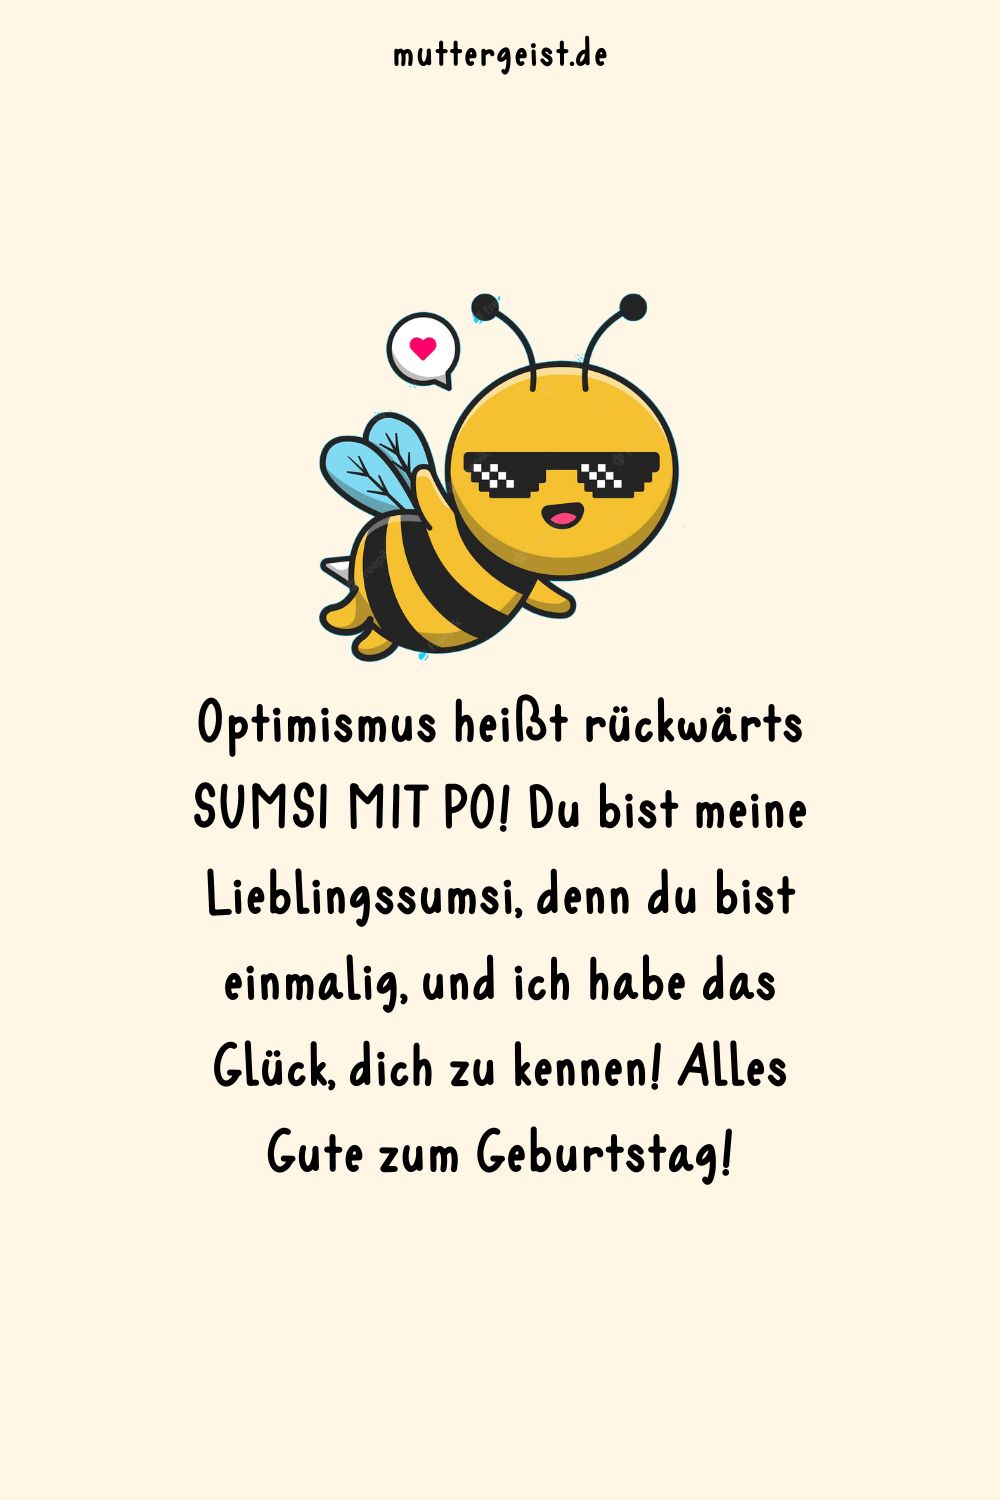 Geburtstagskarte mit Bienenmotiv